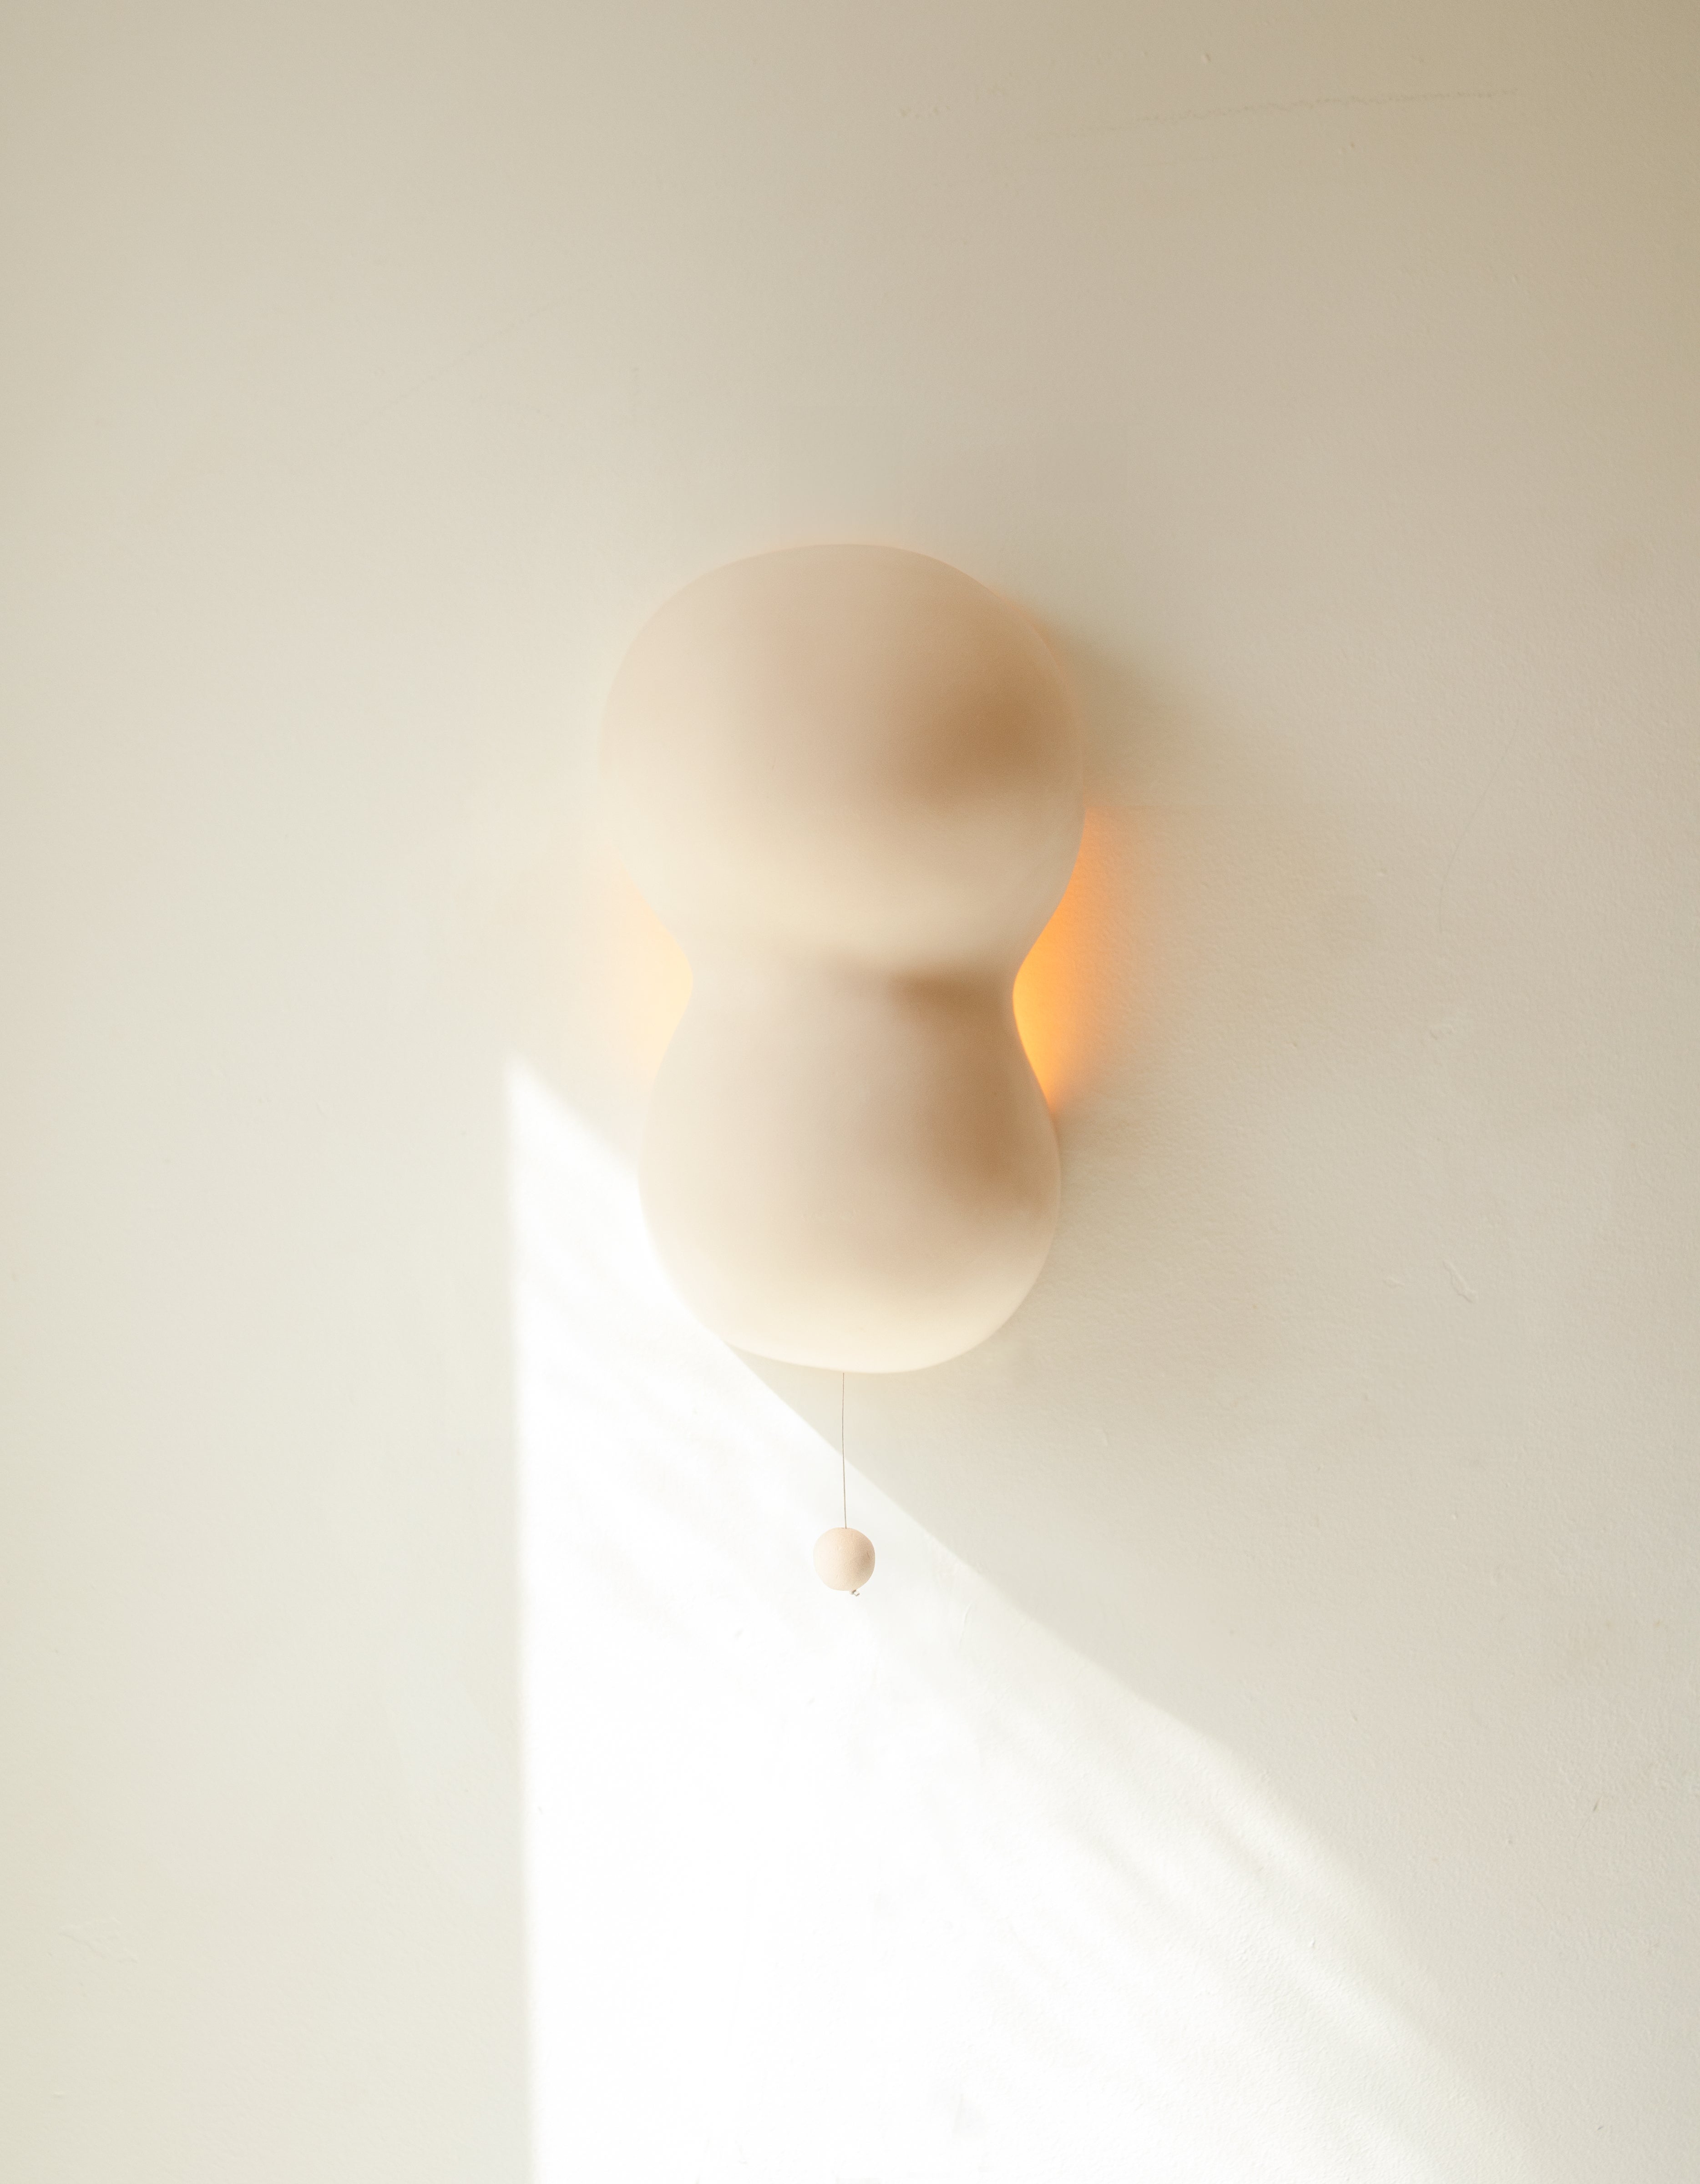 Bubble Lamp ist eine skulpturale Keramiklampe - Wandleuchte. Die Bubble Lamp besticht durch ihre einzigartige skulpturale Form und ihre praktischen Eigenschaften. Die organische Form und die abstrakten Konturen des aus Keramik gefertigten Gefäßes